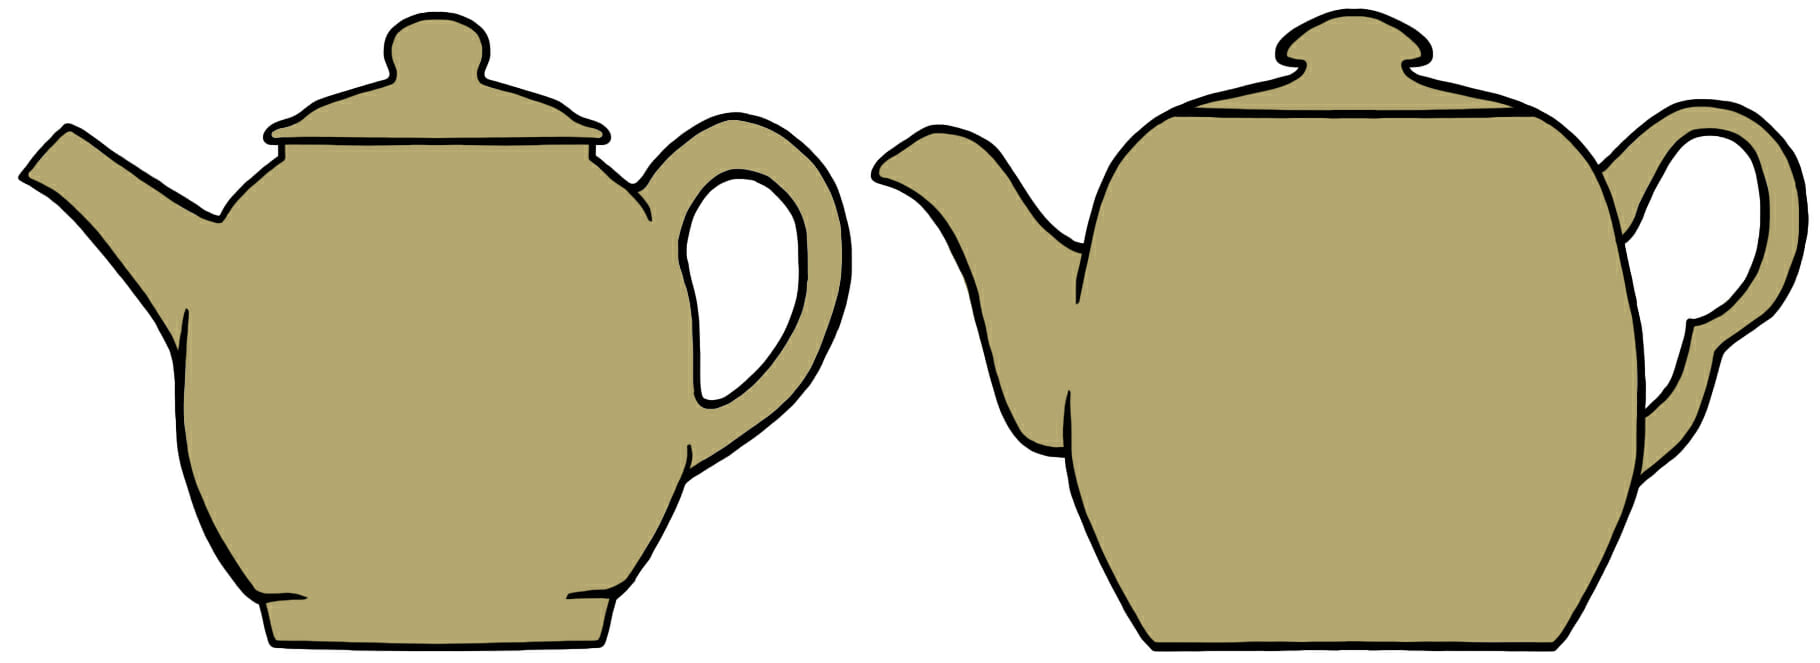 Antique teapot shapes